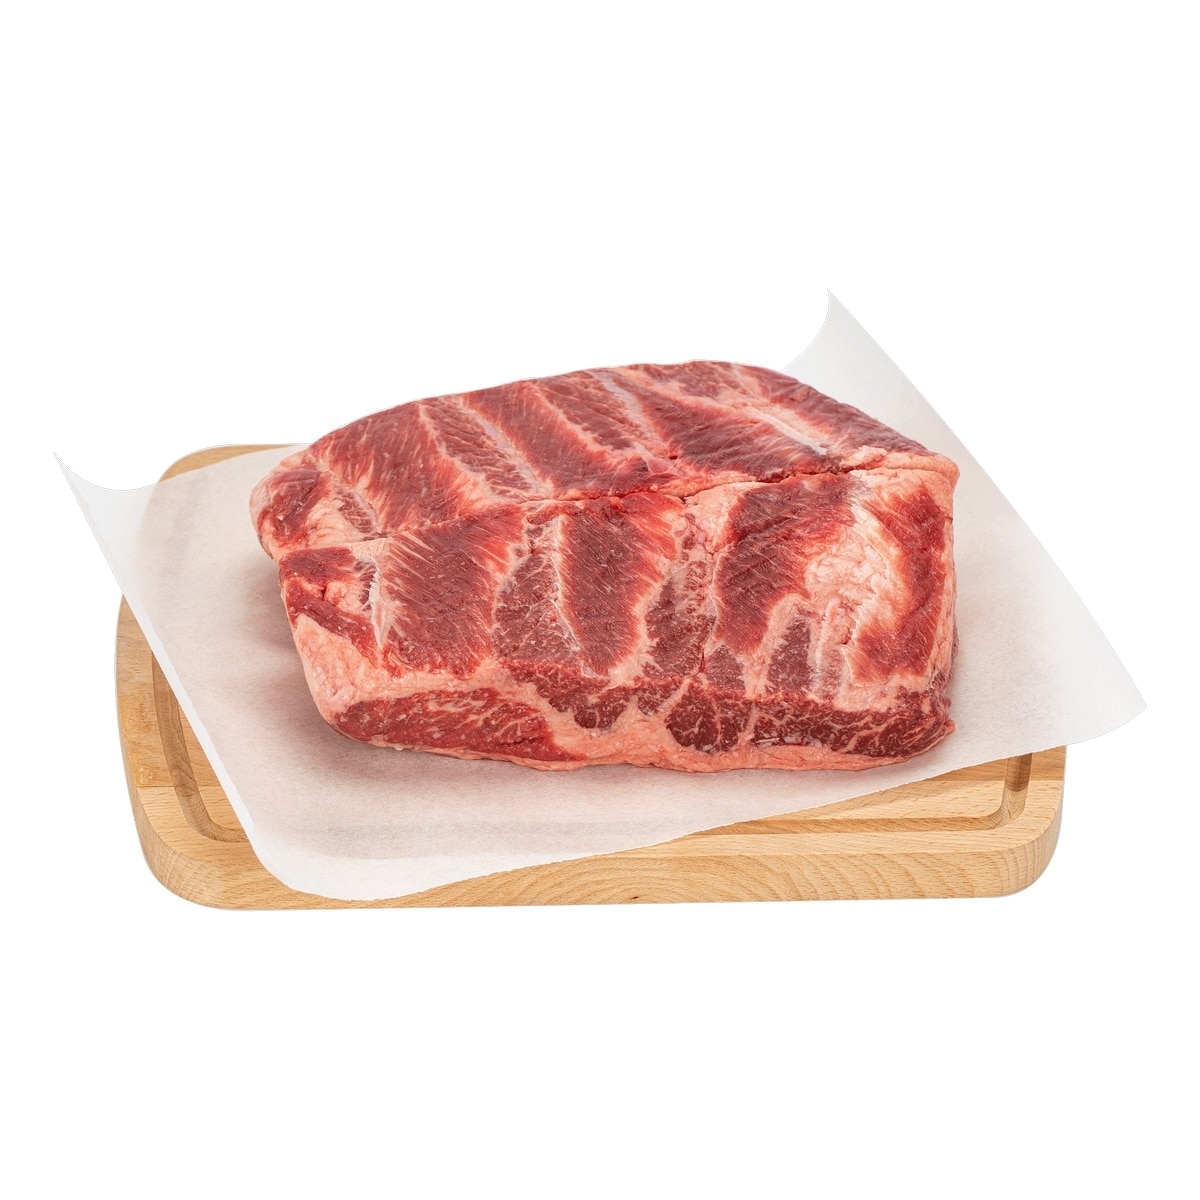 美國特選冷凍翼板肉 22公斤 / 箱